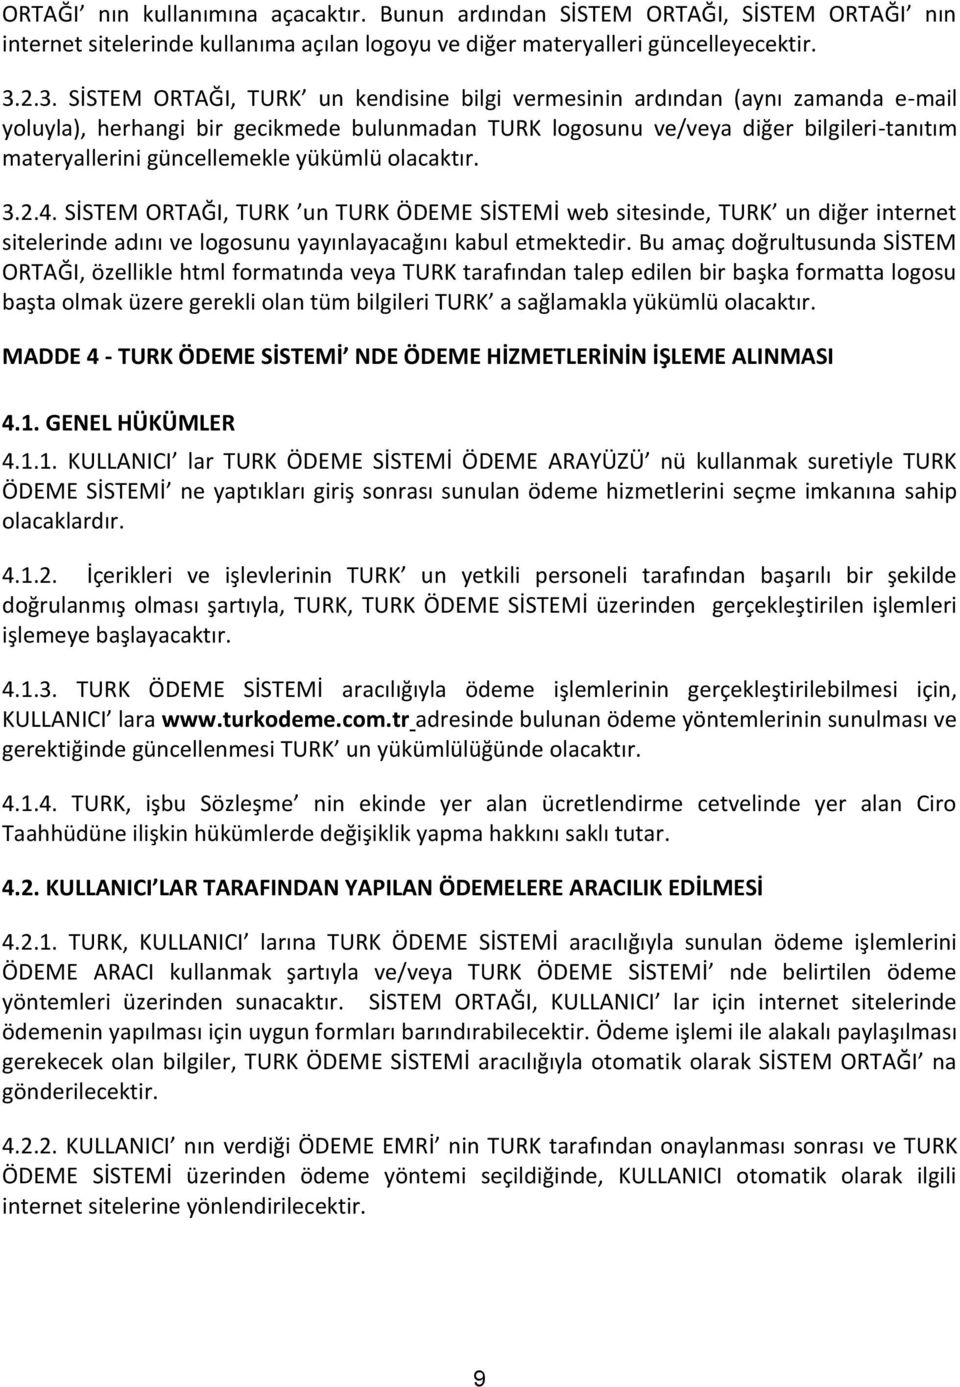 güncellemekle yükümlü olacaktır. 3.2.4. SİSTEM ORTAĞI, TURK un TURK ÖDEME SİSTEMİ web sitesinde, TURK un diğer internet sitelerinde adını ve logosunu yayınlayacağını kabul etmektedir.